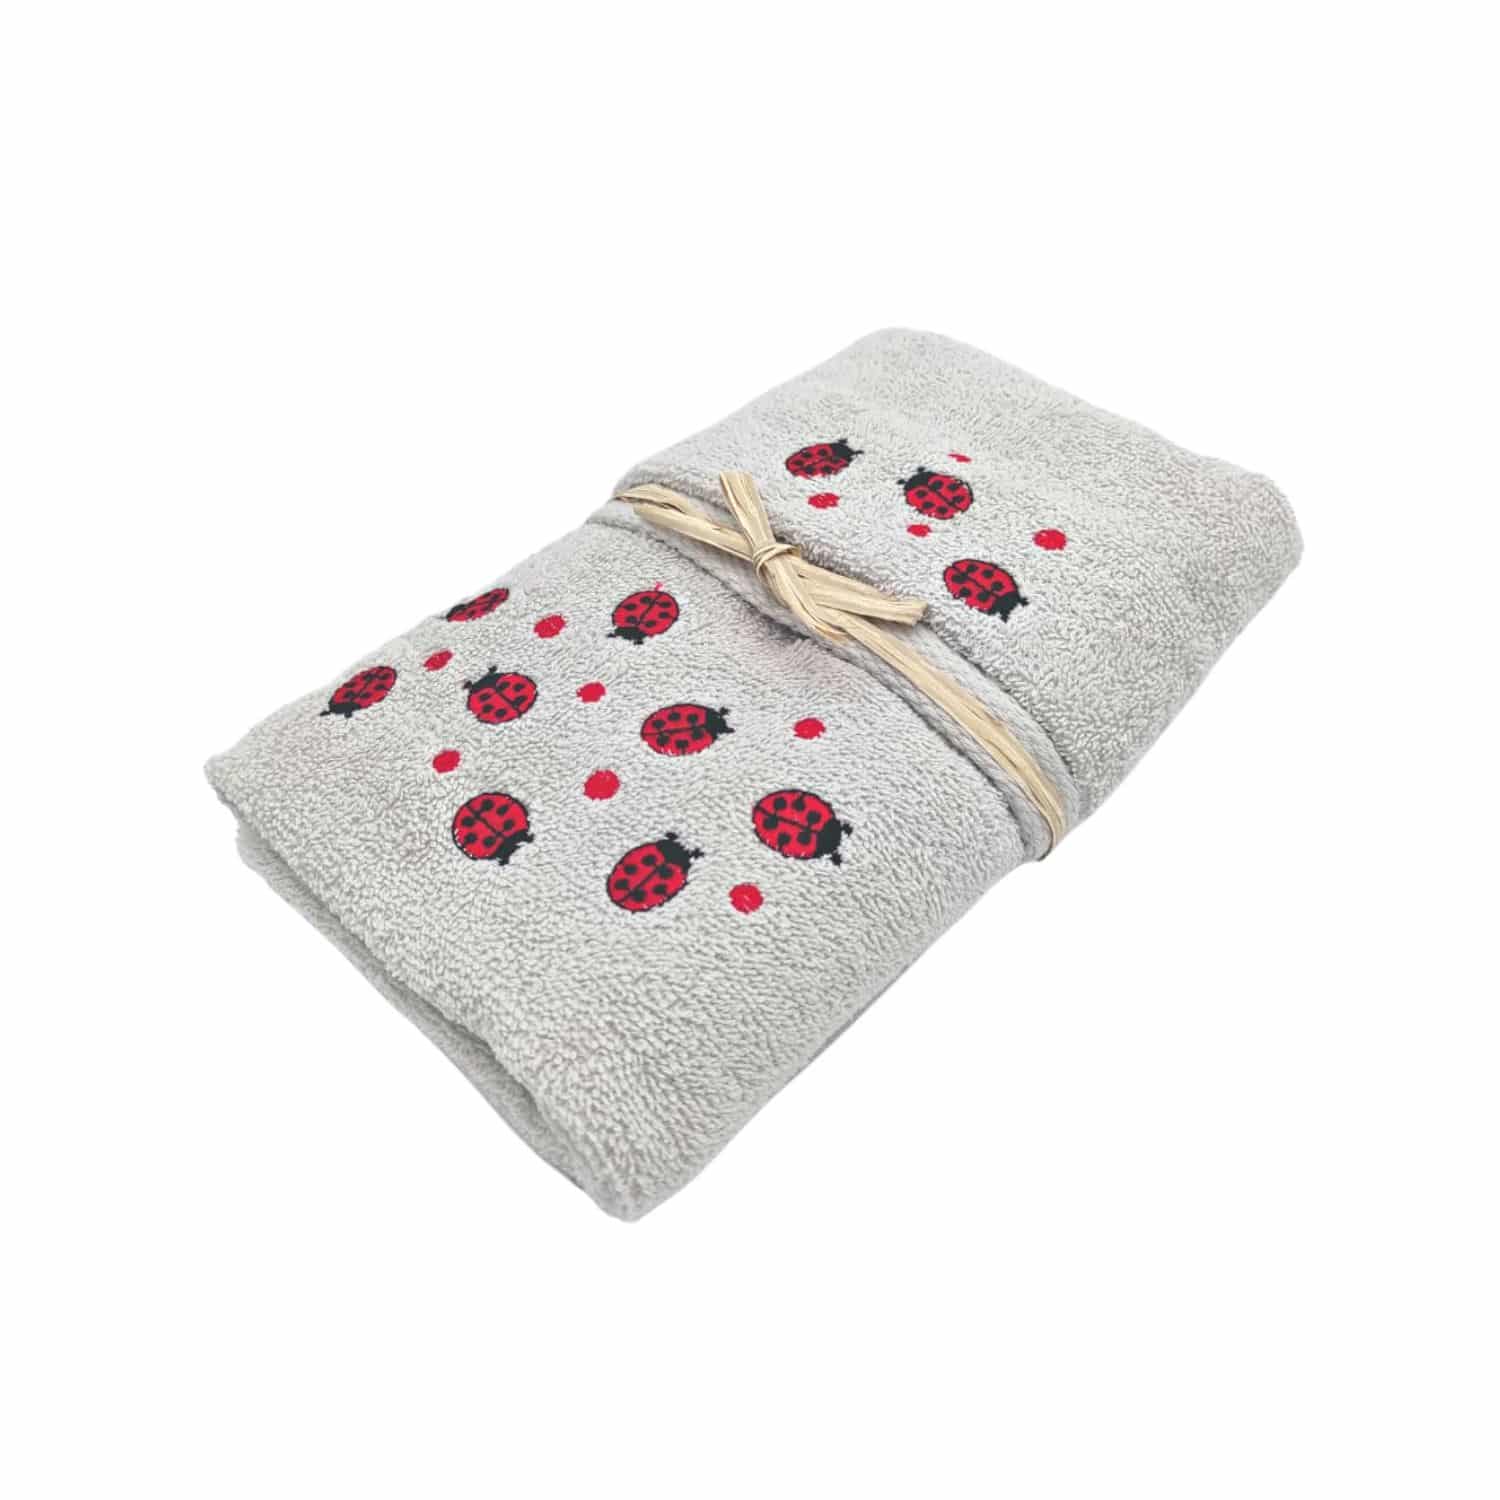 set-asciugamani-1-1-coccinelle-grigio-rosse-cotone-spugna-ricamata-confezione